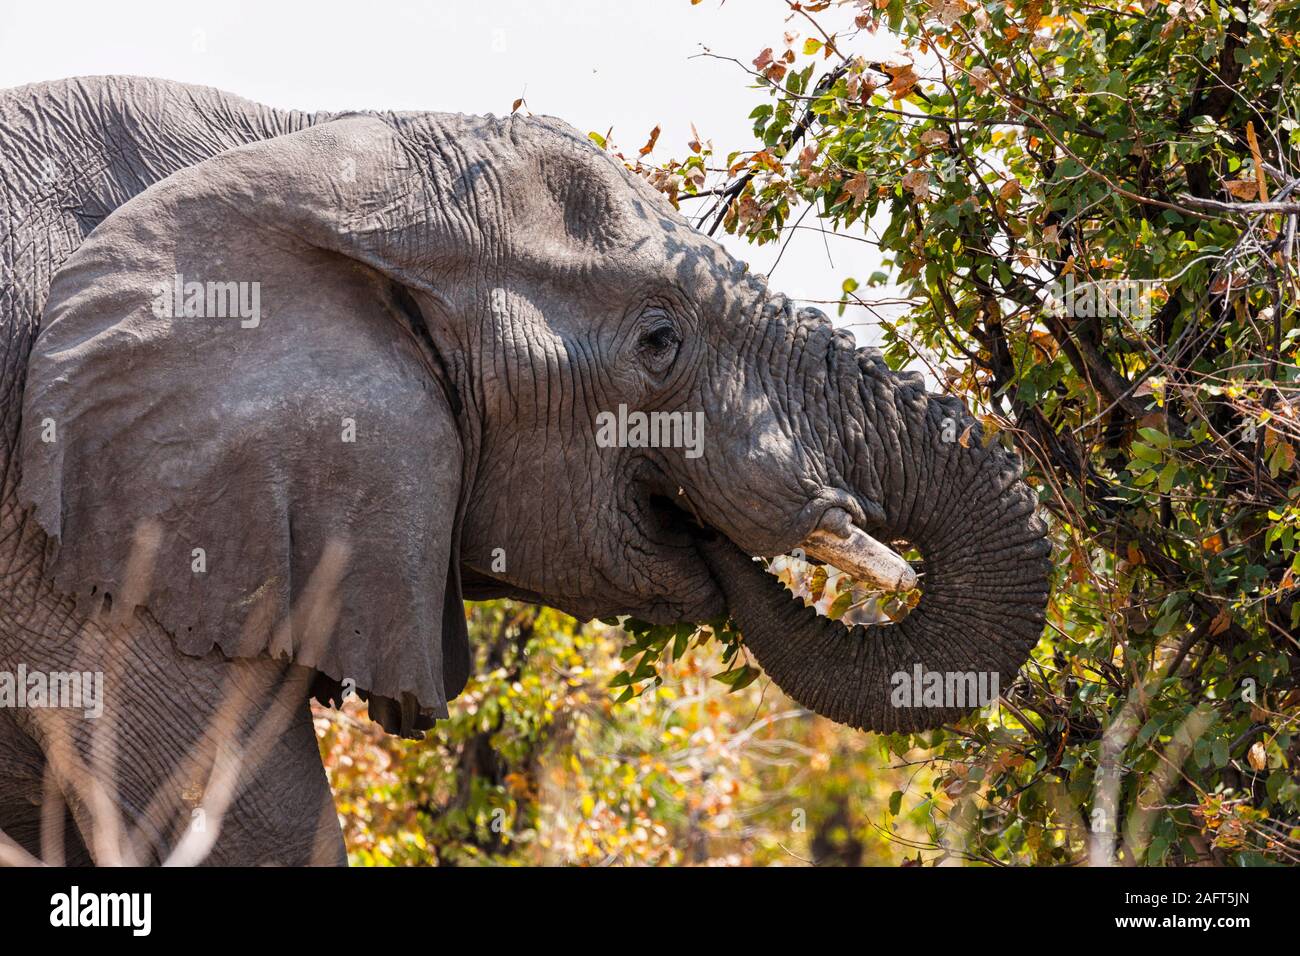 Éléphant mangeant des feuilles dans les buissons, réserve de gibier de Moremi, delta d'Okavango, Botswana, Afrique australe, Afrique Banque D'Images